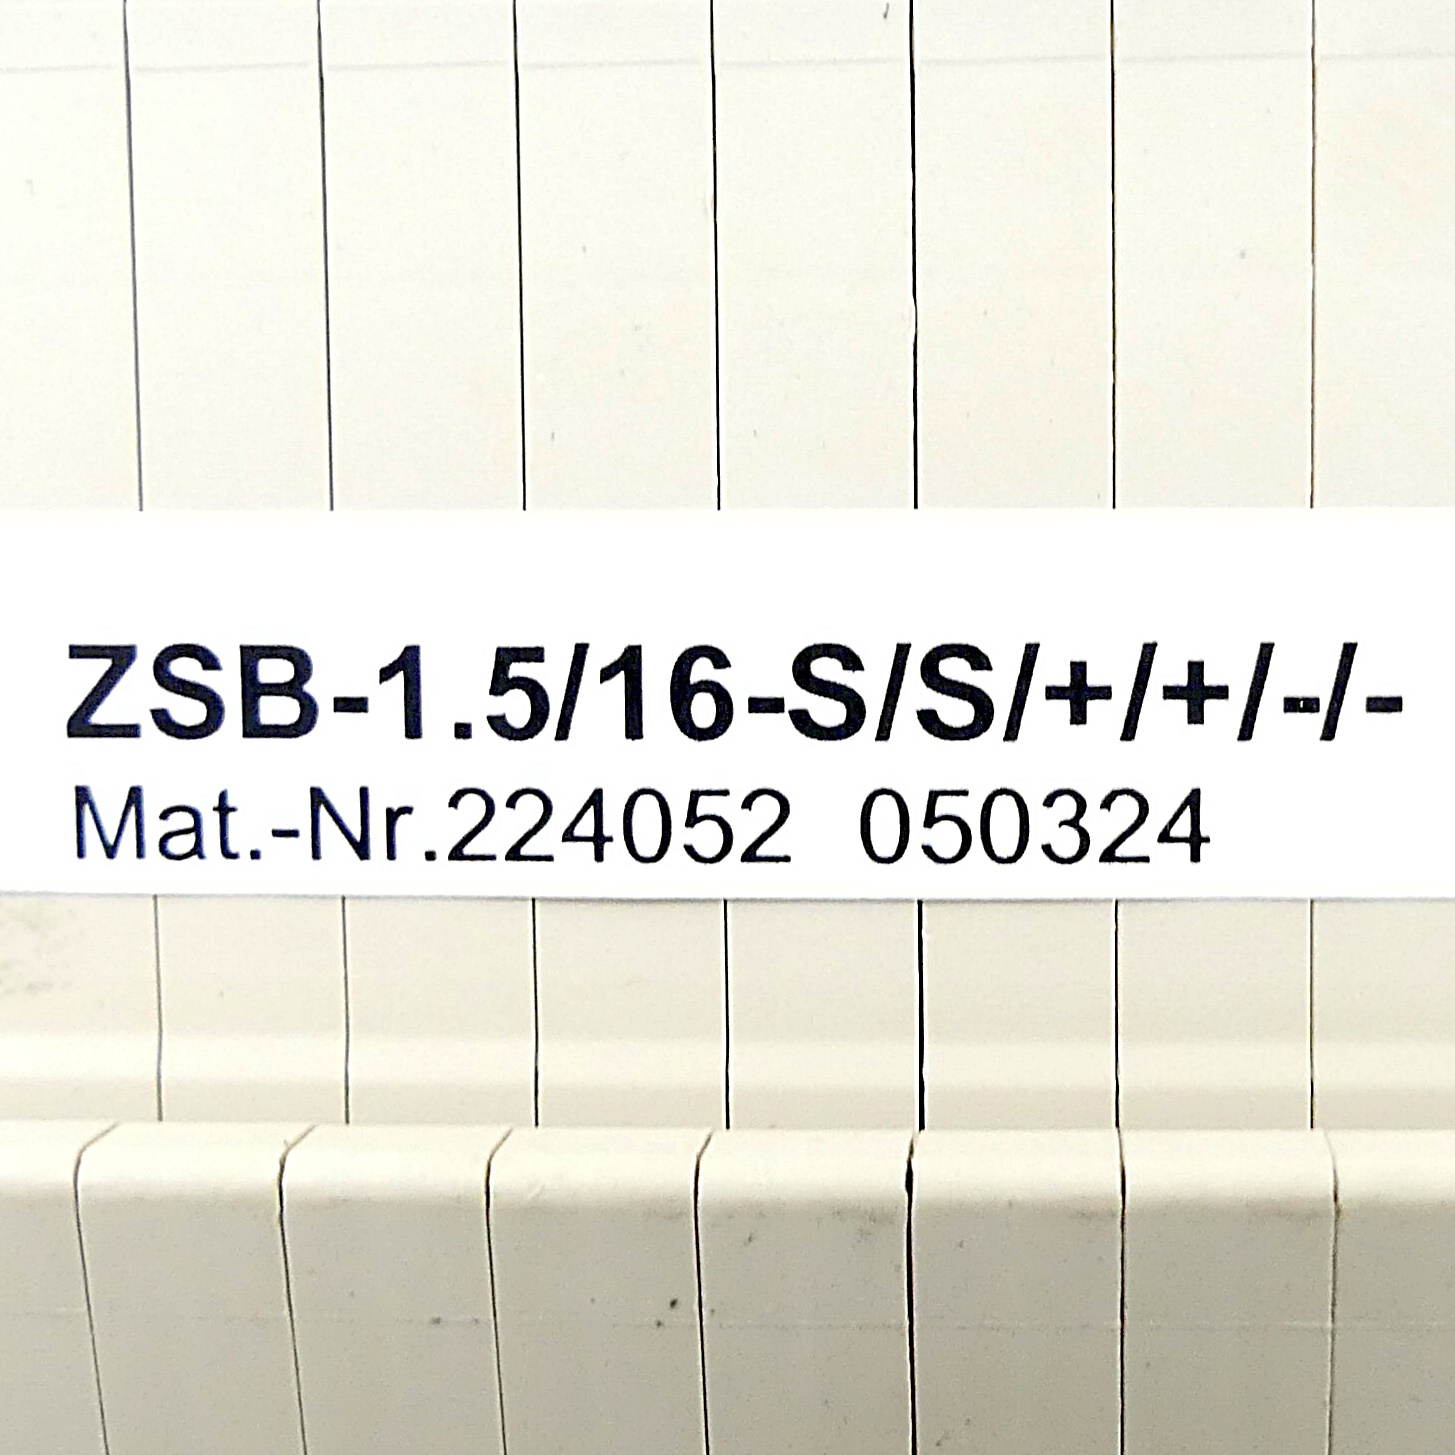 Base terminal block ZSB-1.5/16-S/S/+/+/-/- 